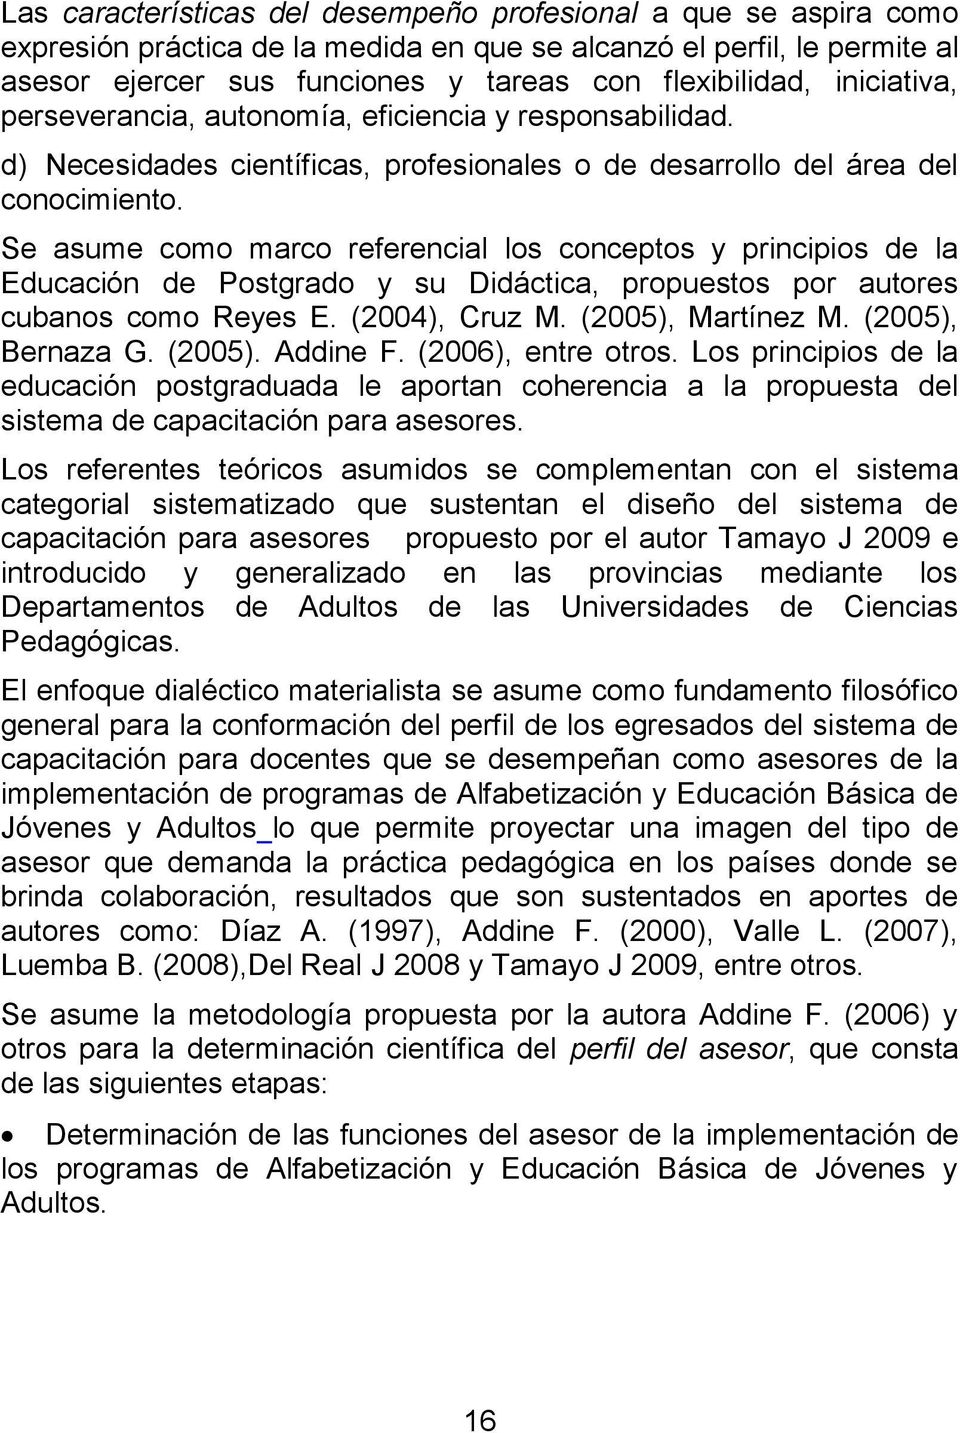 Se asume como marco referencial los conceptos y principios de la Educación de Postgrado y su Didáctica, propuestos por autores cubanos como Reyes E. (2004), Cruz M. (2005), Martínez M.